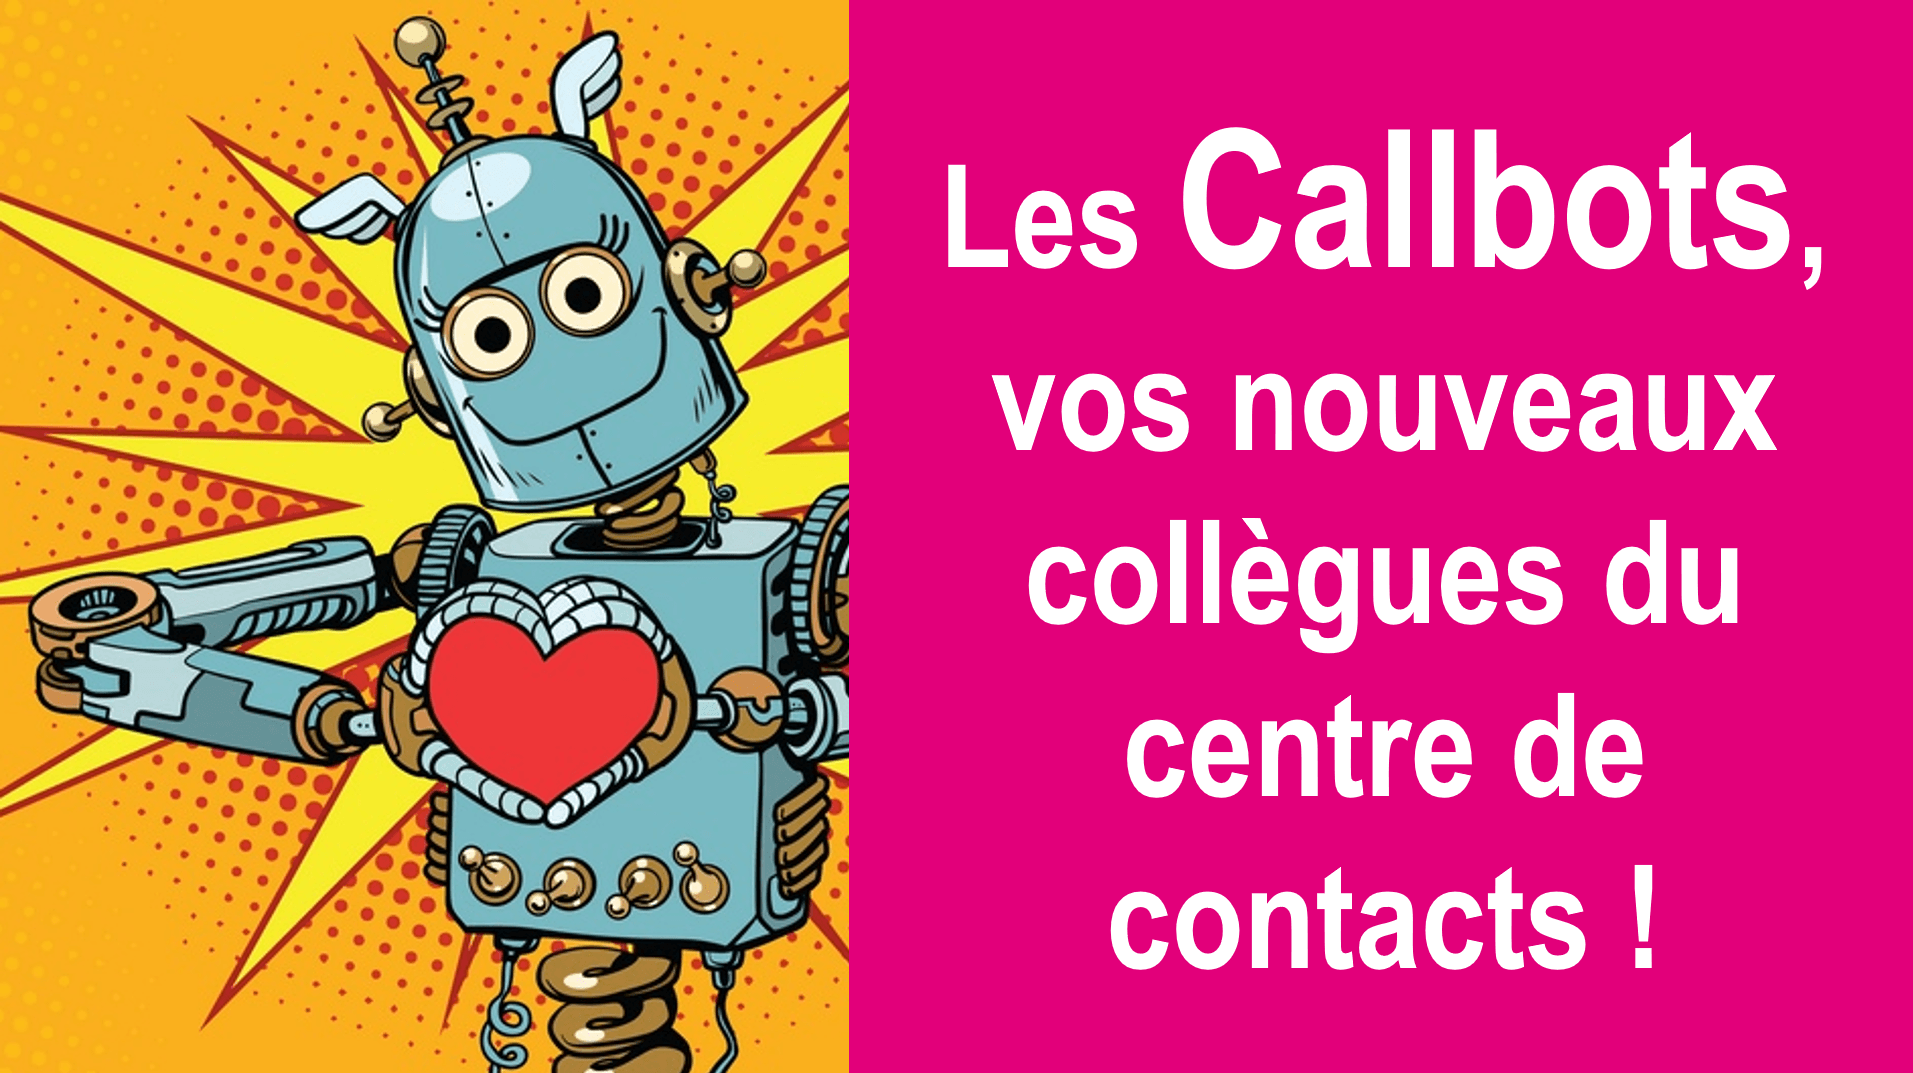 Les Callbots, vos nouveaux collègues du centre de contacts 🤖 ! 58